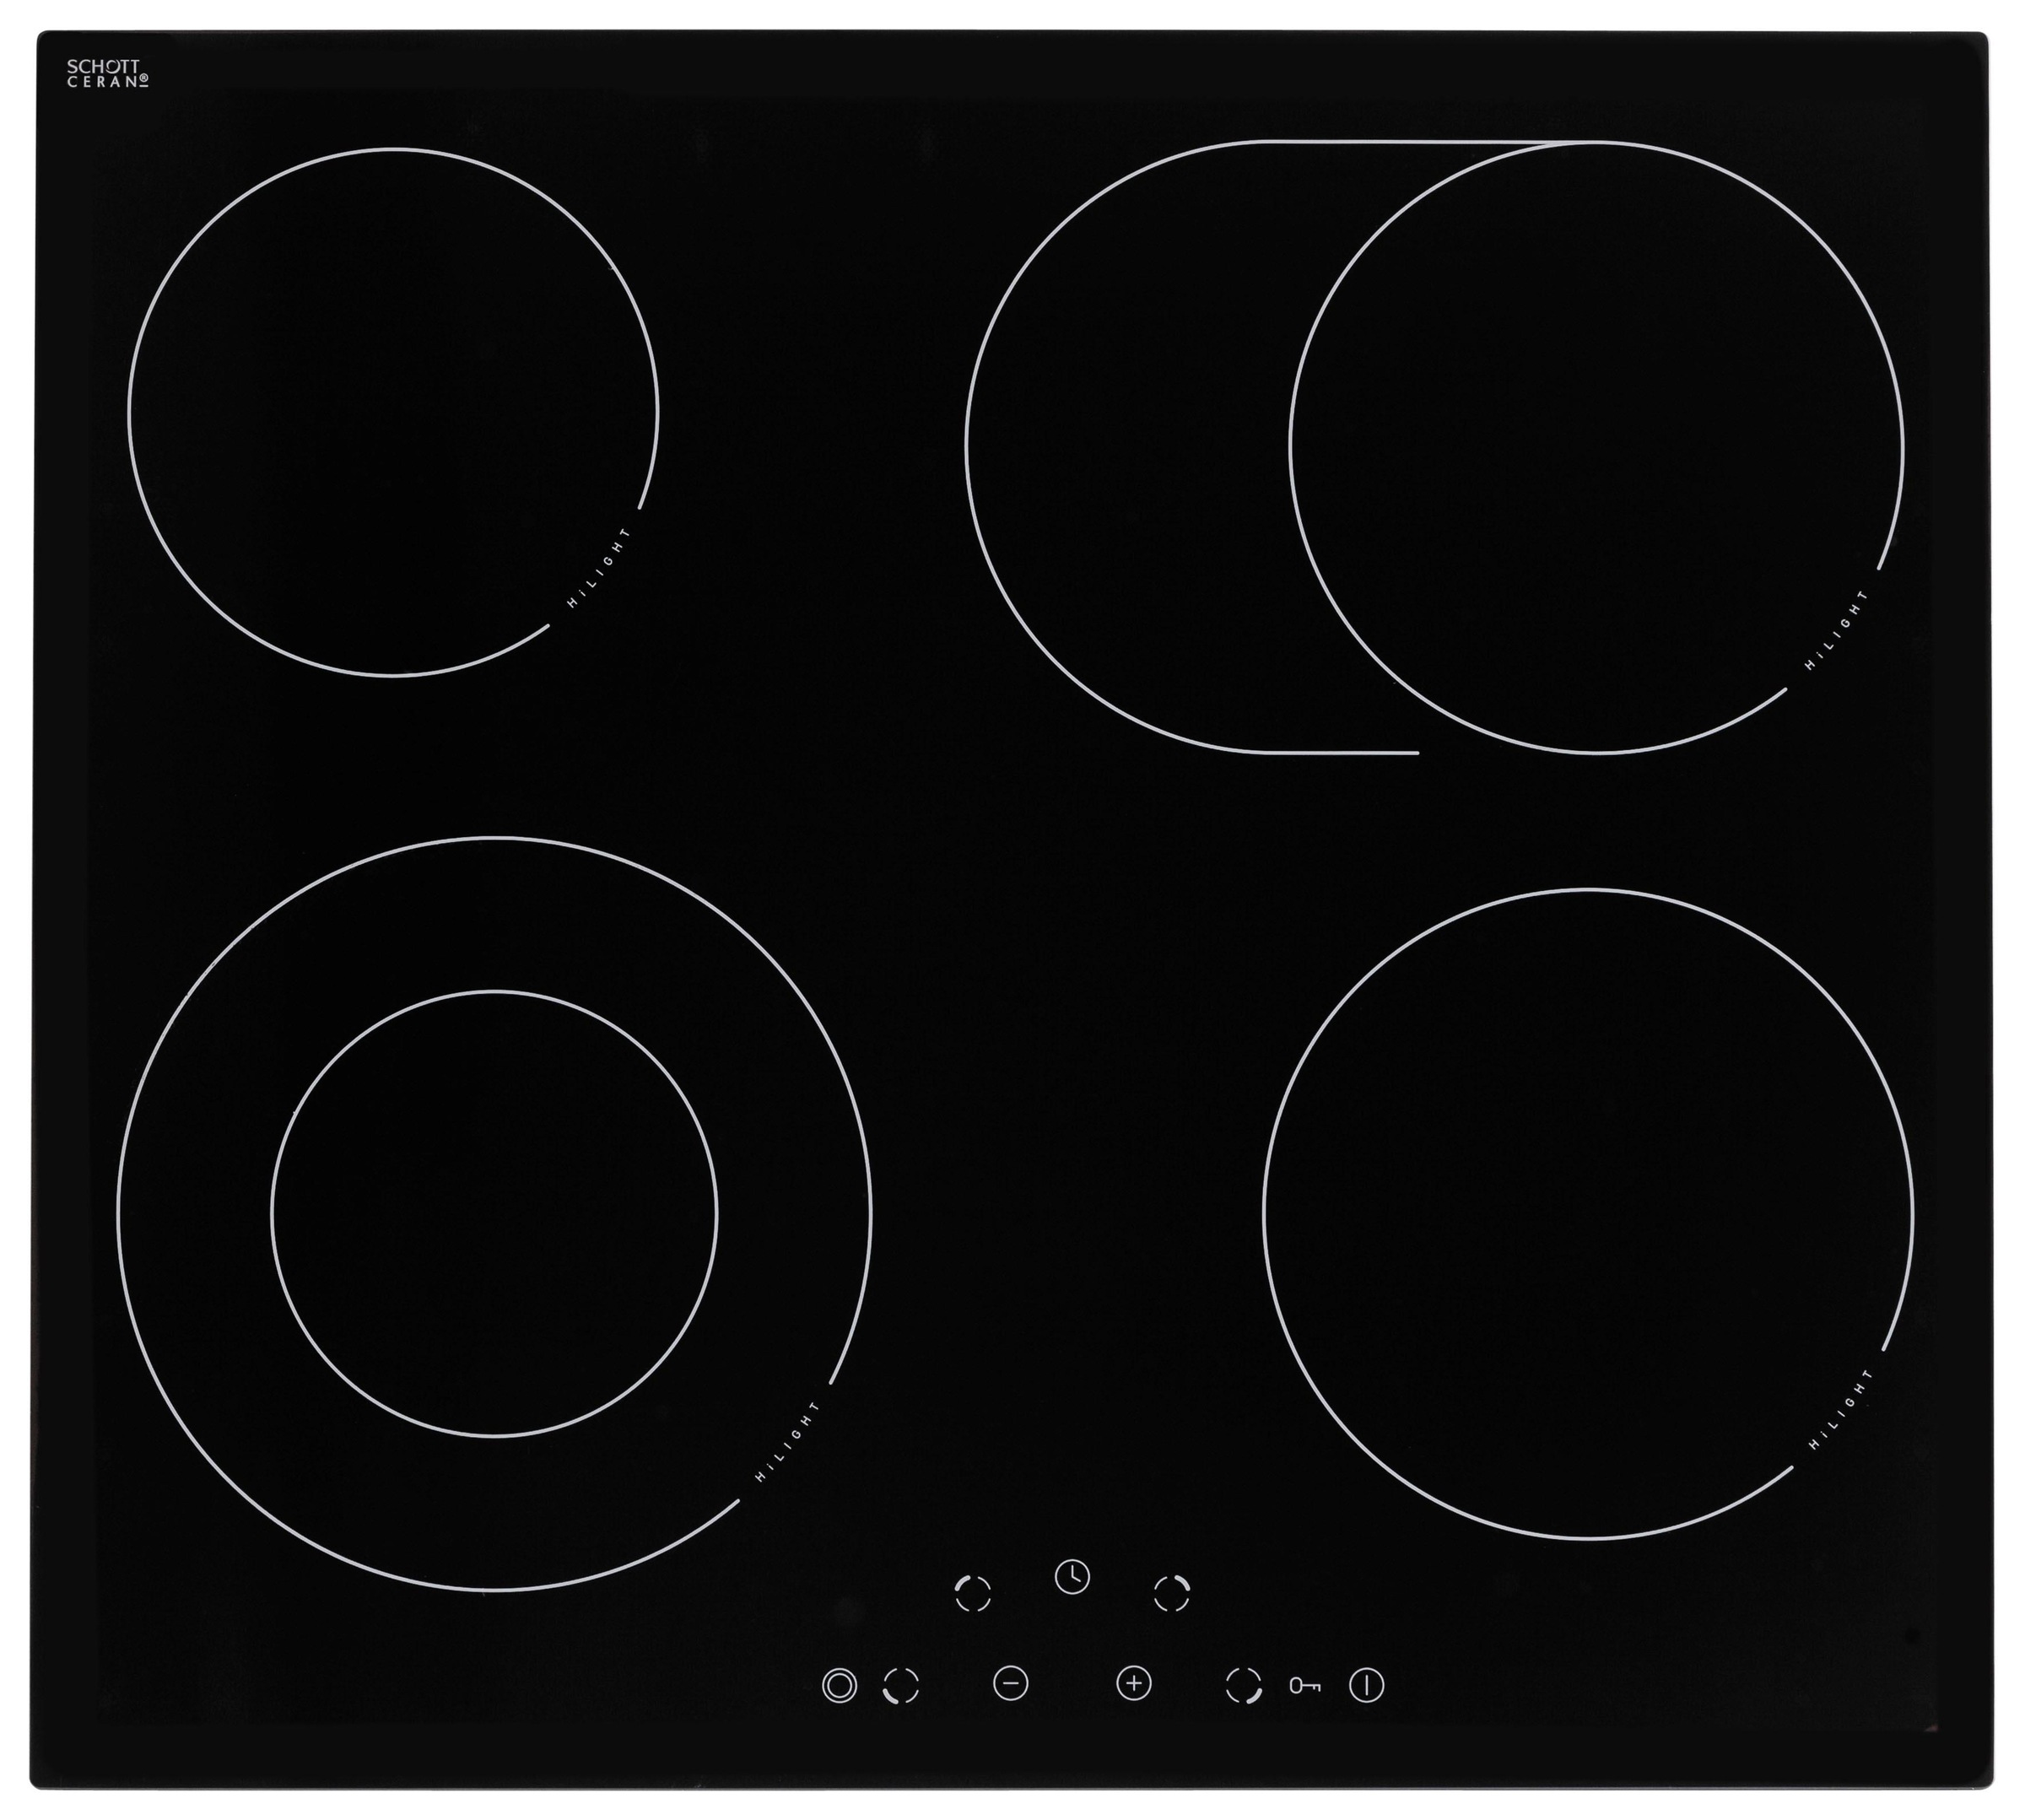 wiho Küchen Küchenzeile »Esbo«, mit E-Geräten, Breite 280 cm bequem kaufen